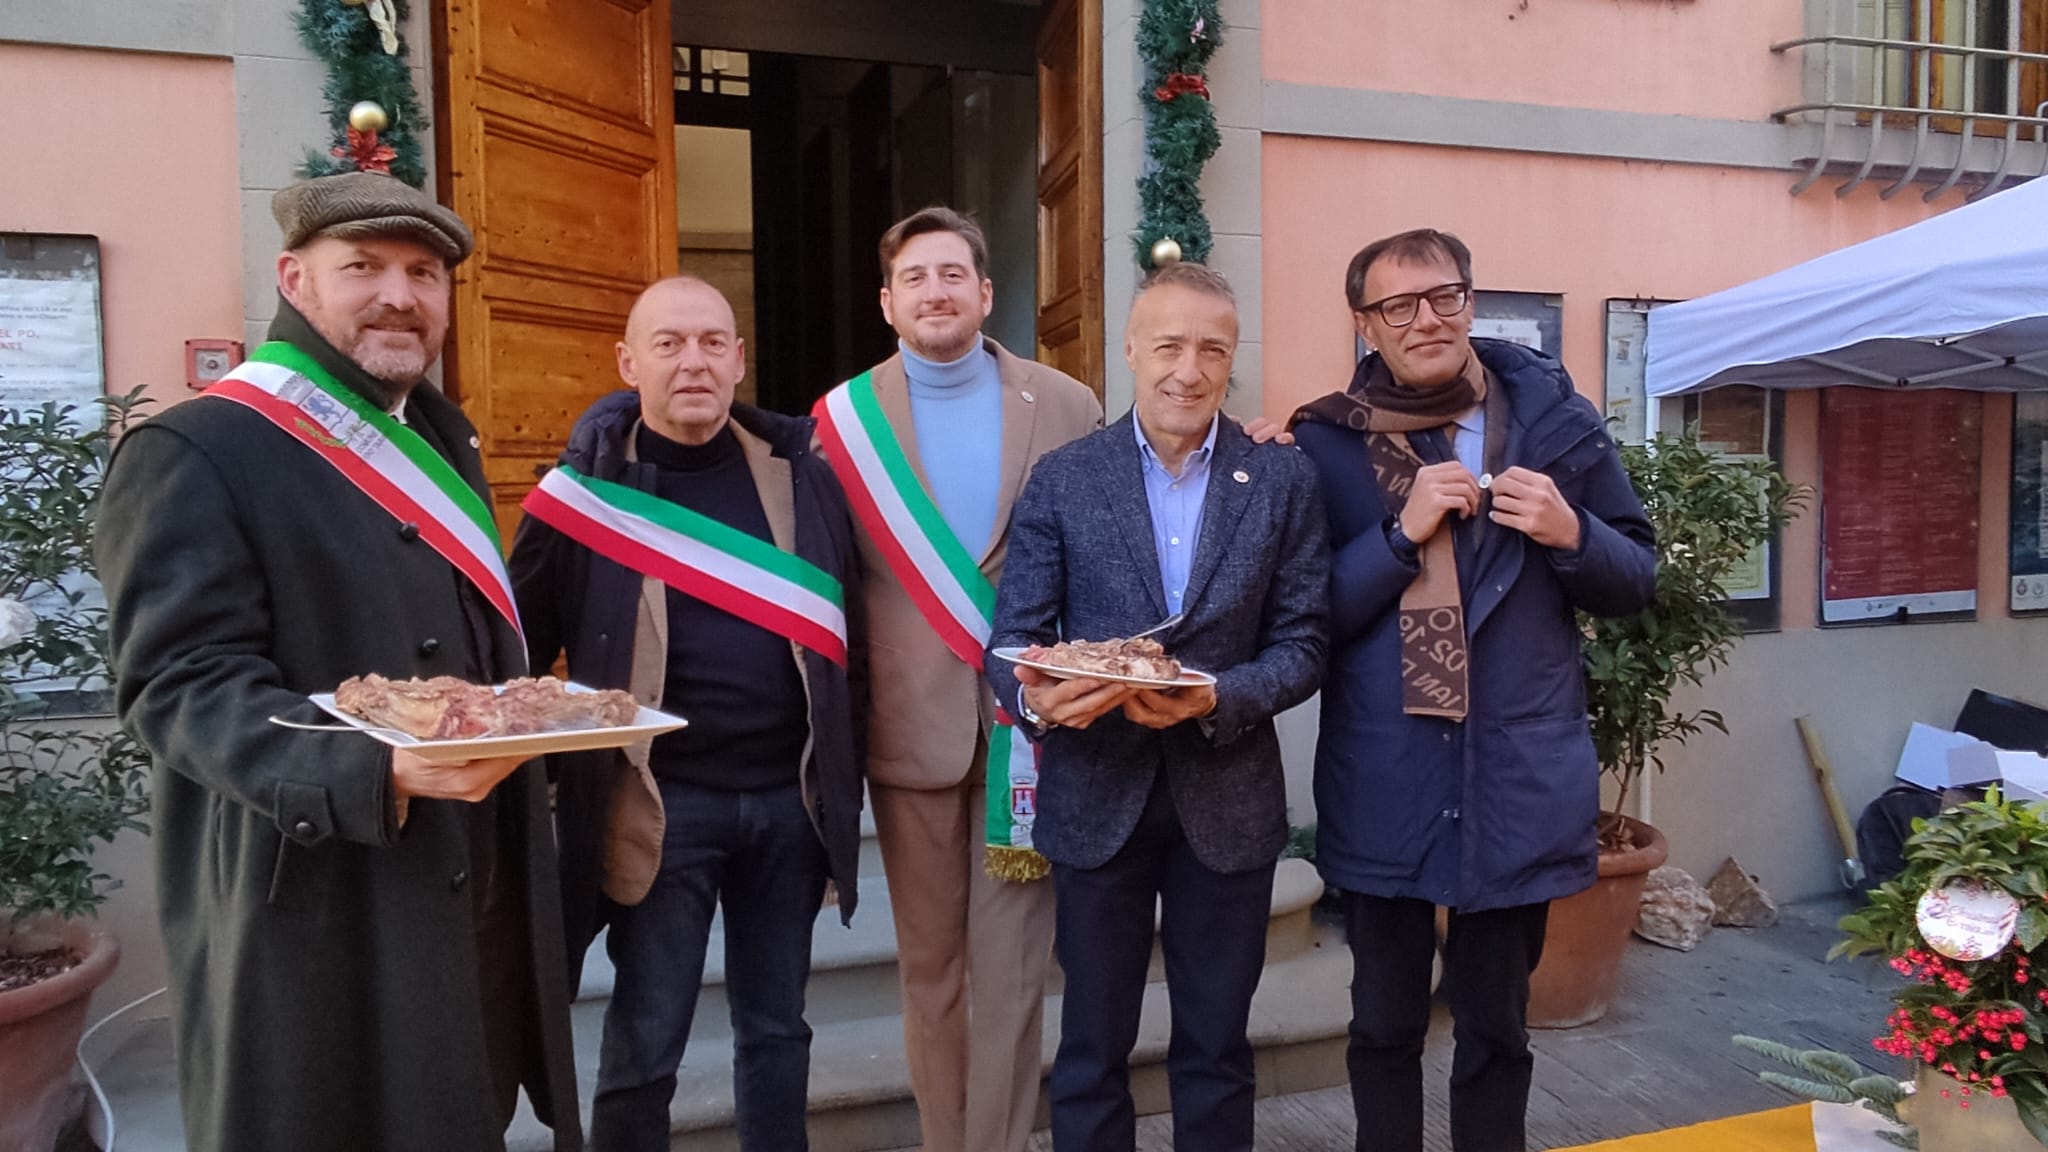 Il Chianti unito propone la Bistecca alla Fiorentina come simbolo di cultura e tradizione italiana riconosciuto a livello mondiale (Fonte foto Unione Comunale del Chianti Fiorentino)